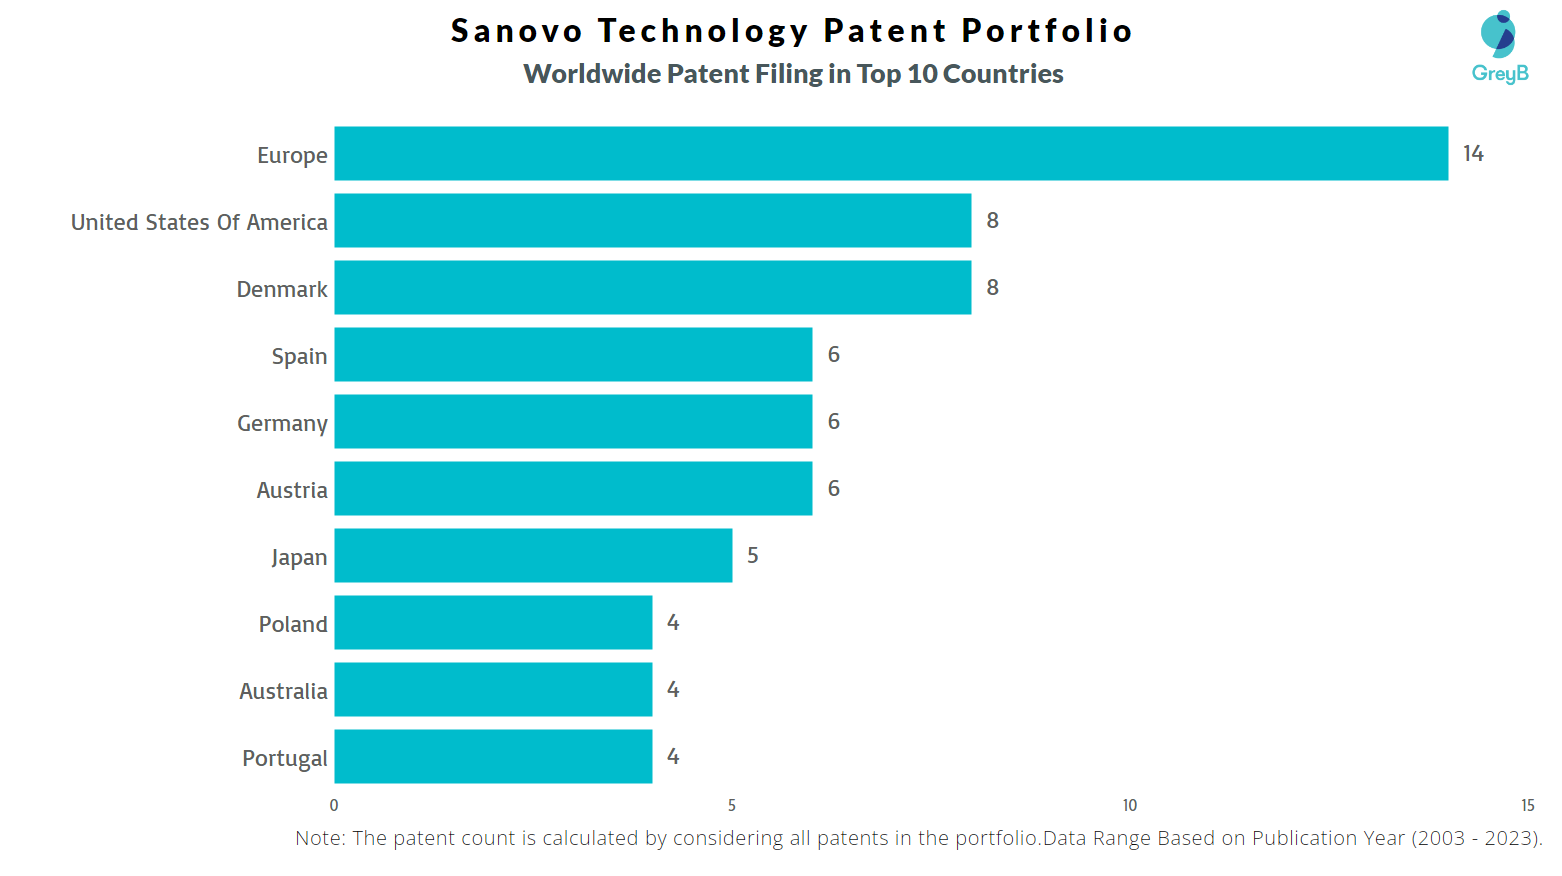 Sanovo Technology Worldwide Patent Filing